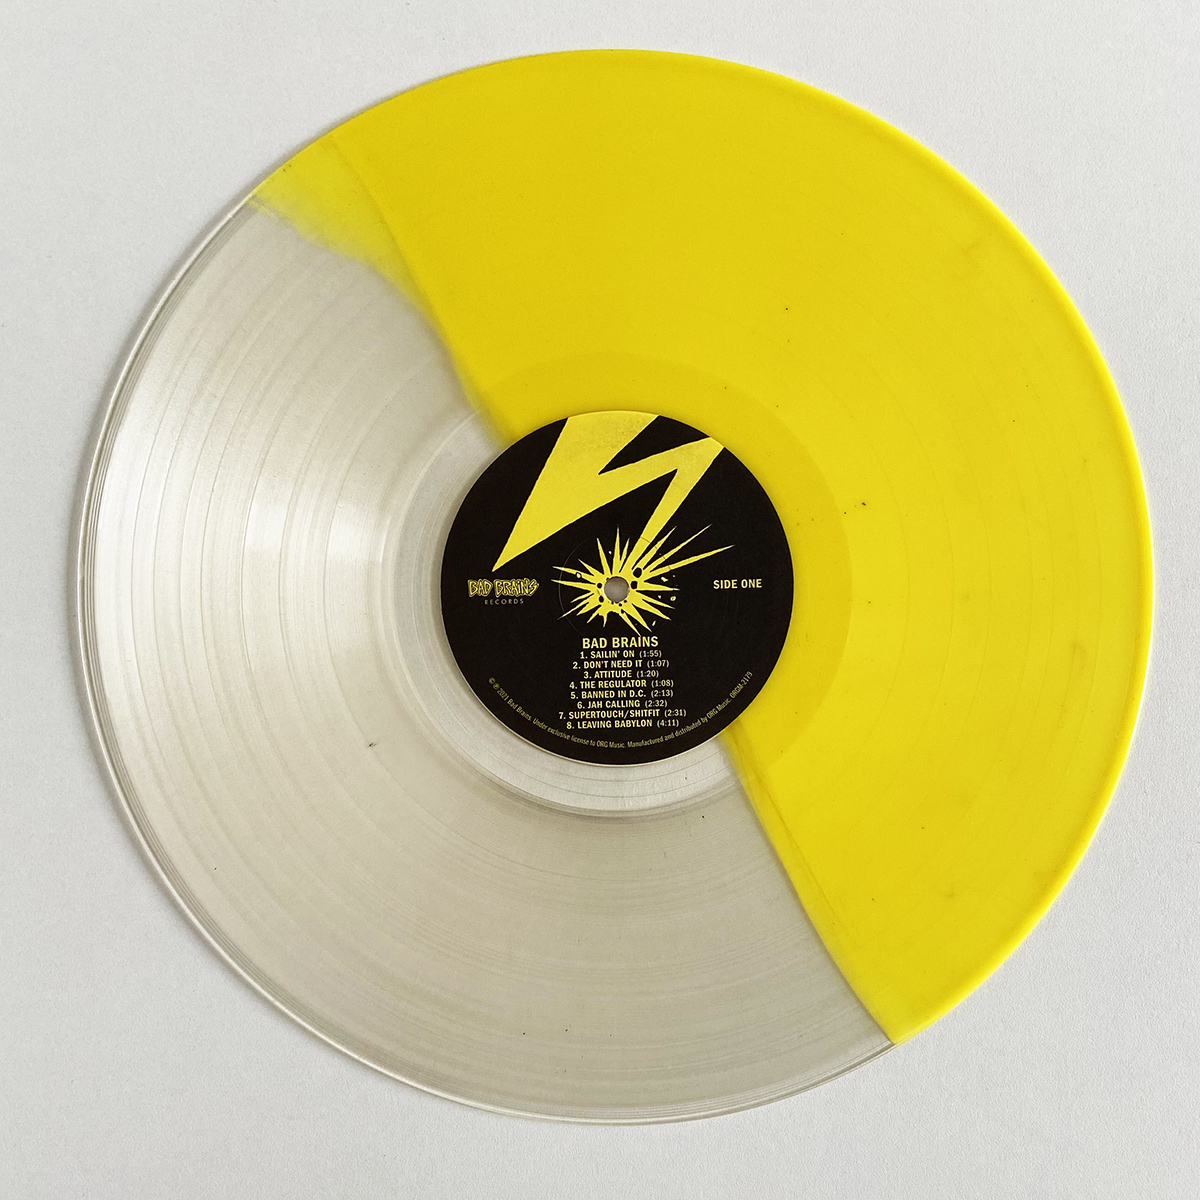 Bad Brains-Bad Brains Exclusive LP (Split) Color Vinyl